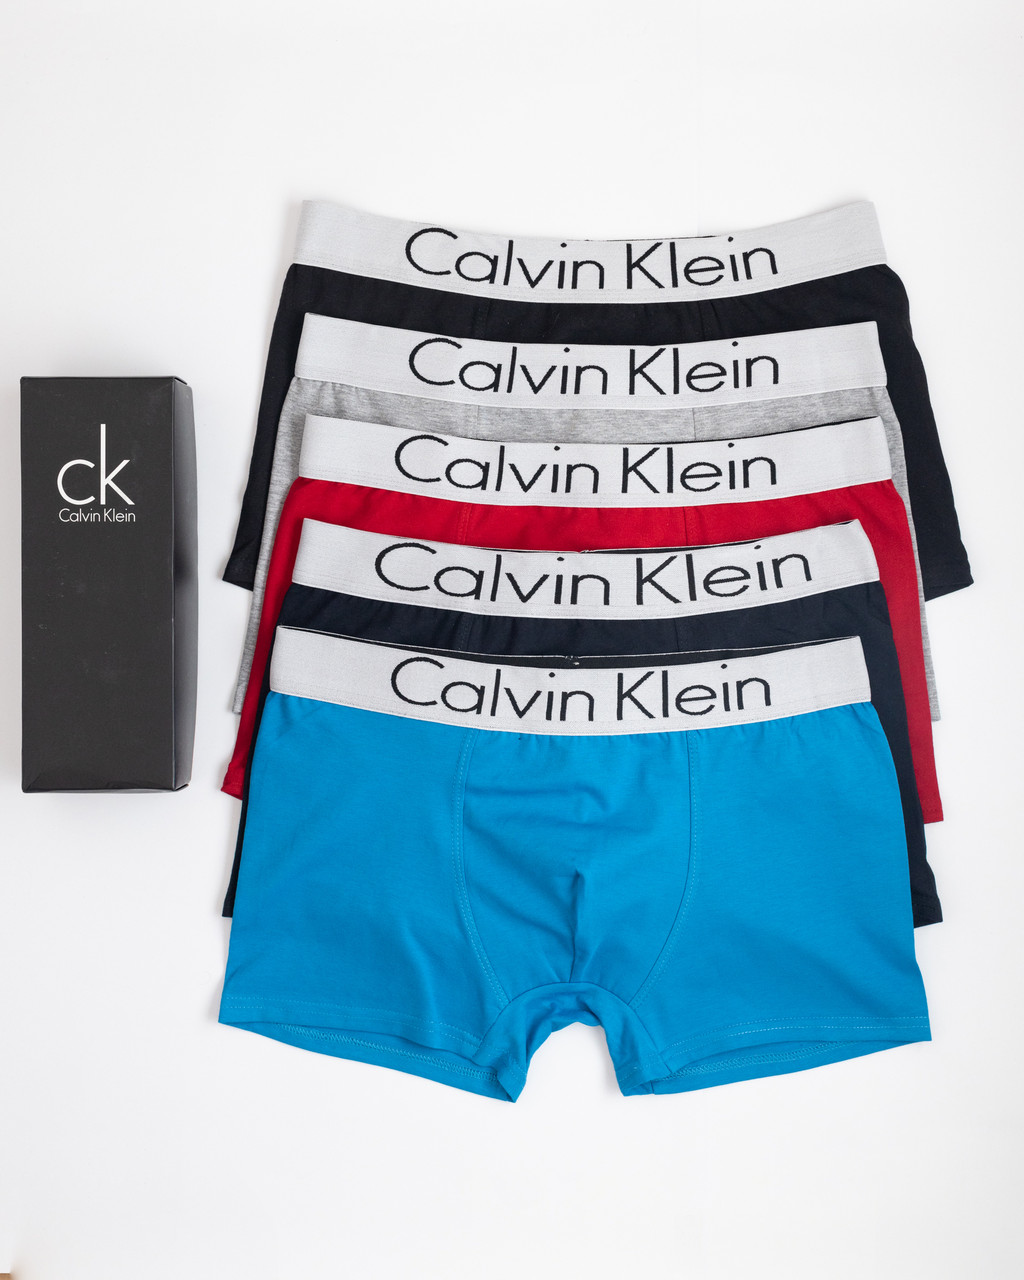 Набір чоловічих трусів Calvin Klein у подарунковій упаковці 5 шт.|||